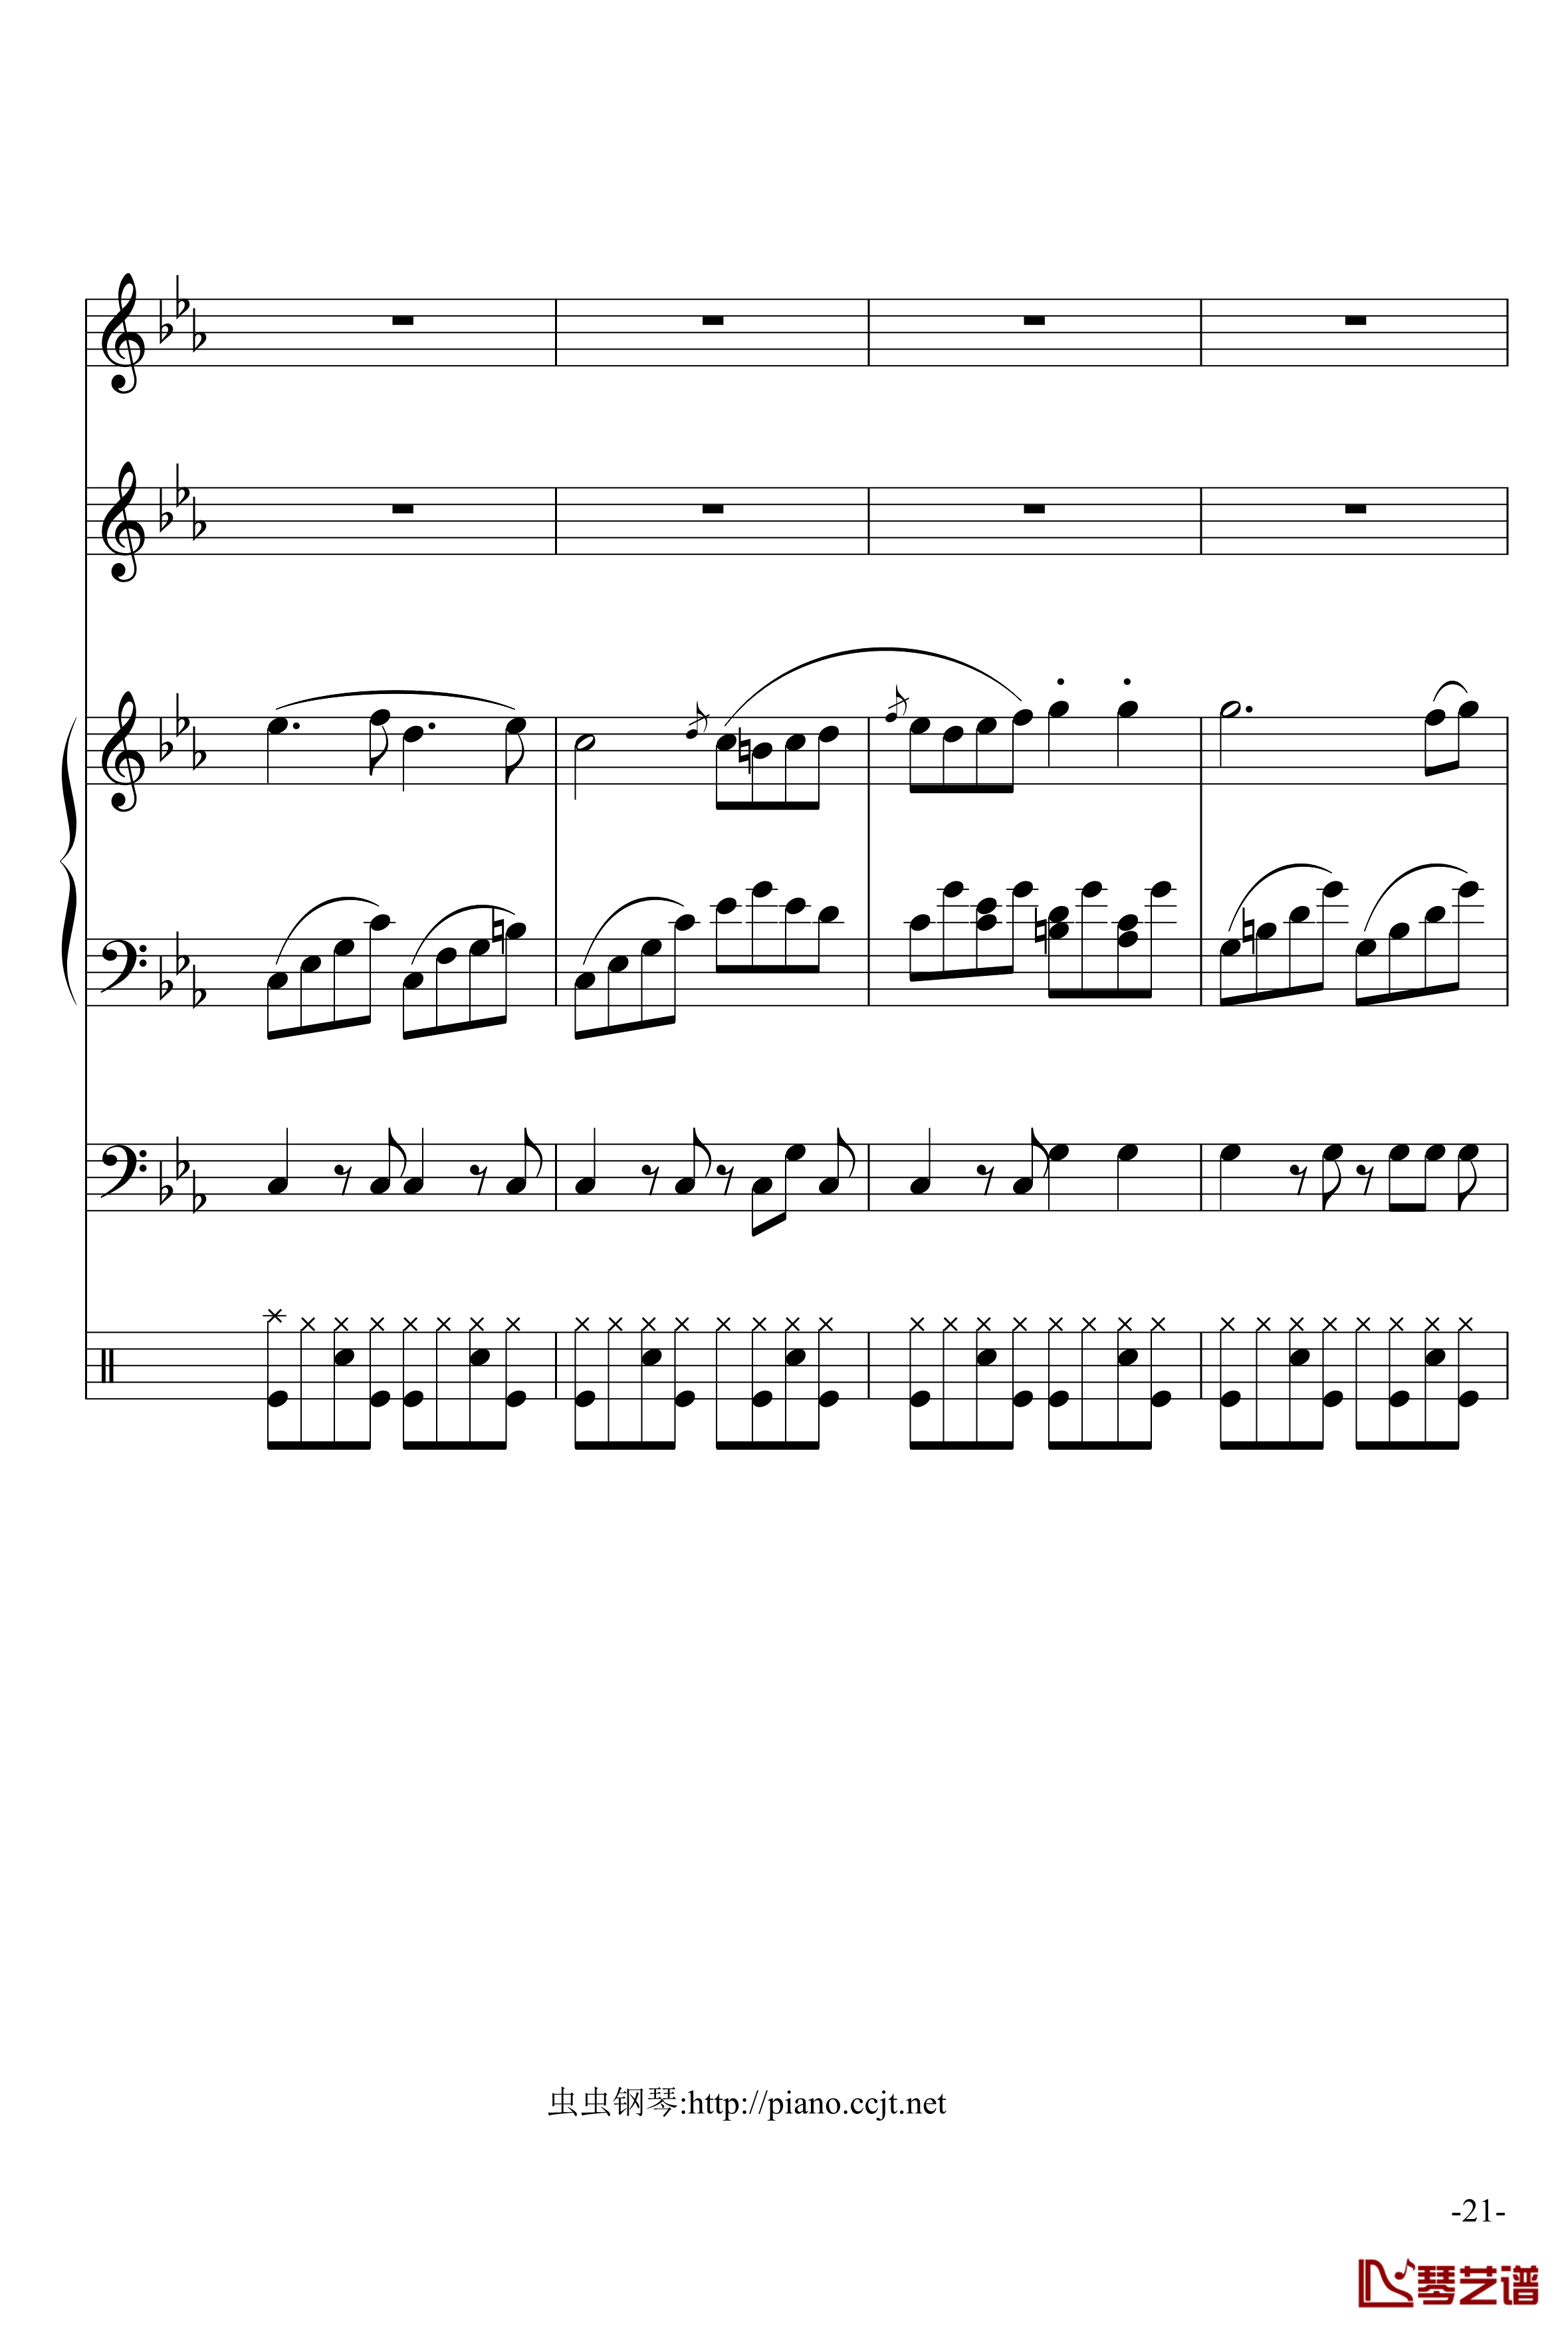 悲怆奏鸣曲钢琴谱-加小乐队-贝多芬-beethoven21